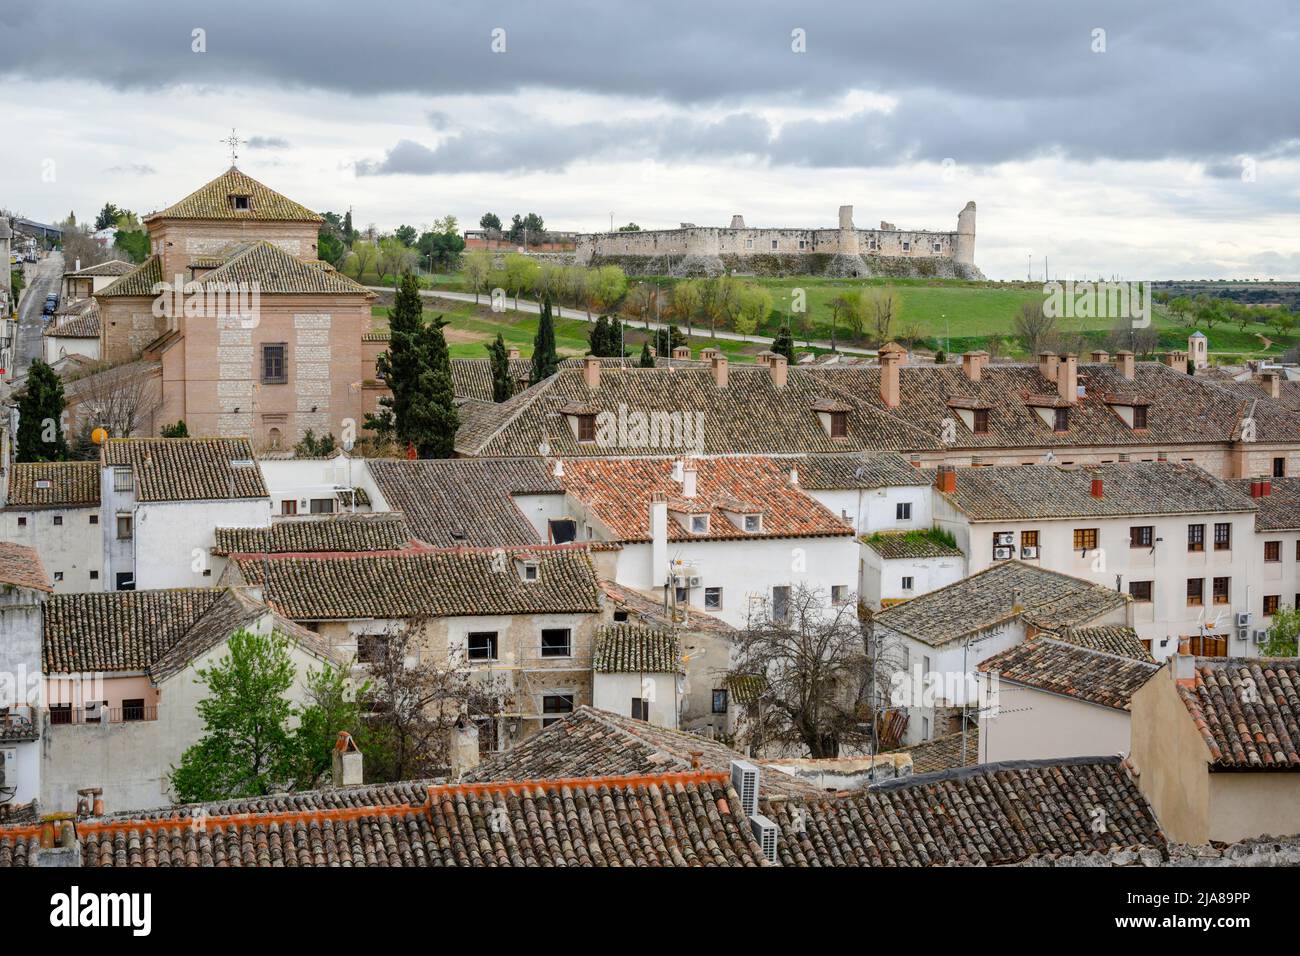 Dächer und Blick auf die Burg in der Stadt Chinchon, Madrid, Spanien. Stockfoto